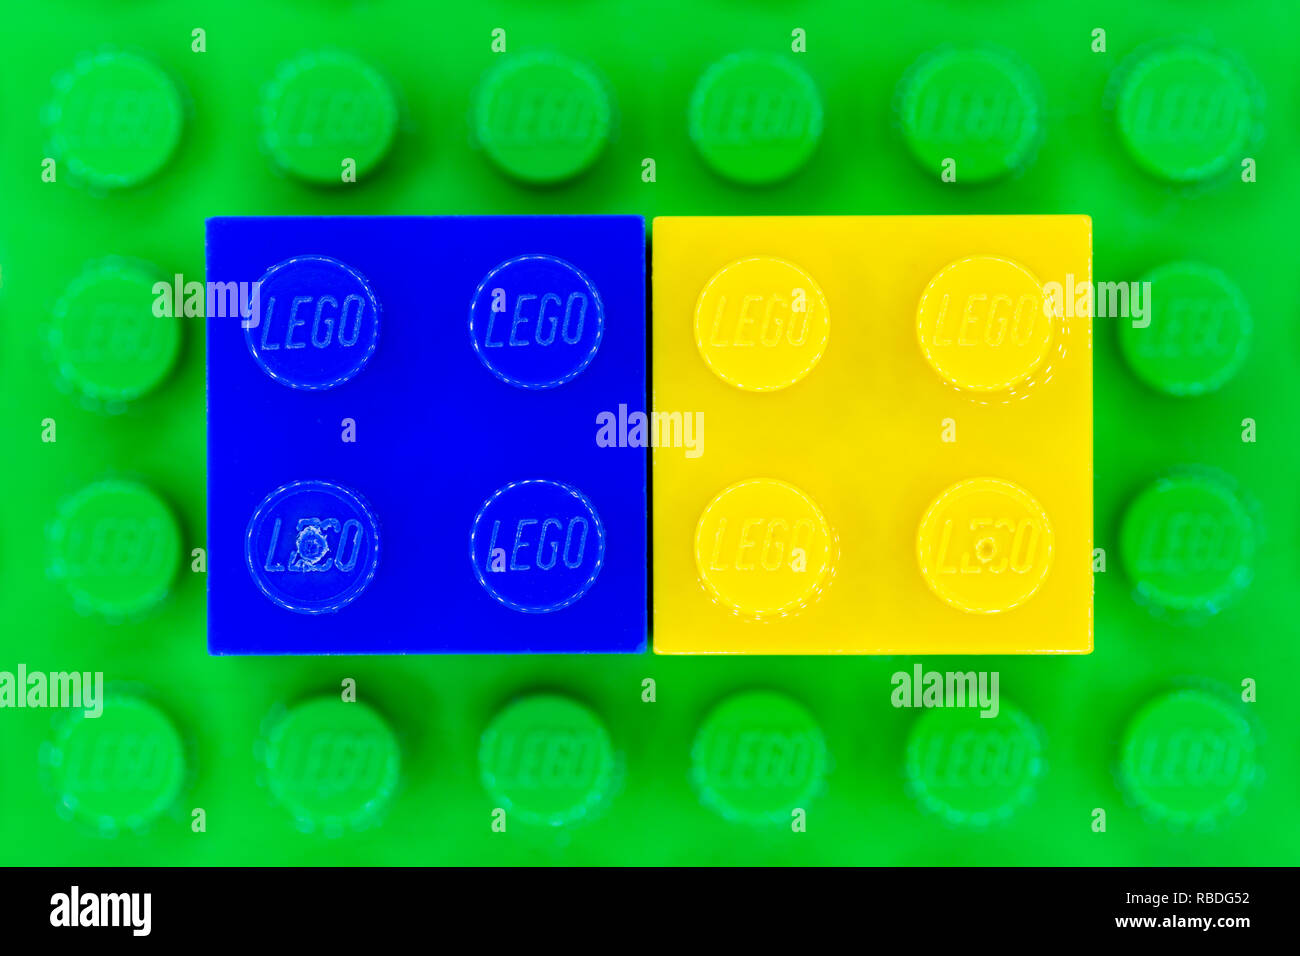 Bleu et jaune 2x2 briques Lego sur une base Lego vert Banque D'Images